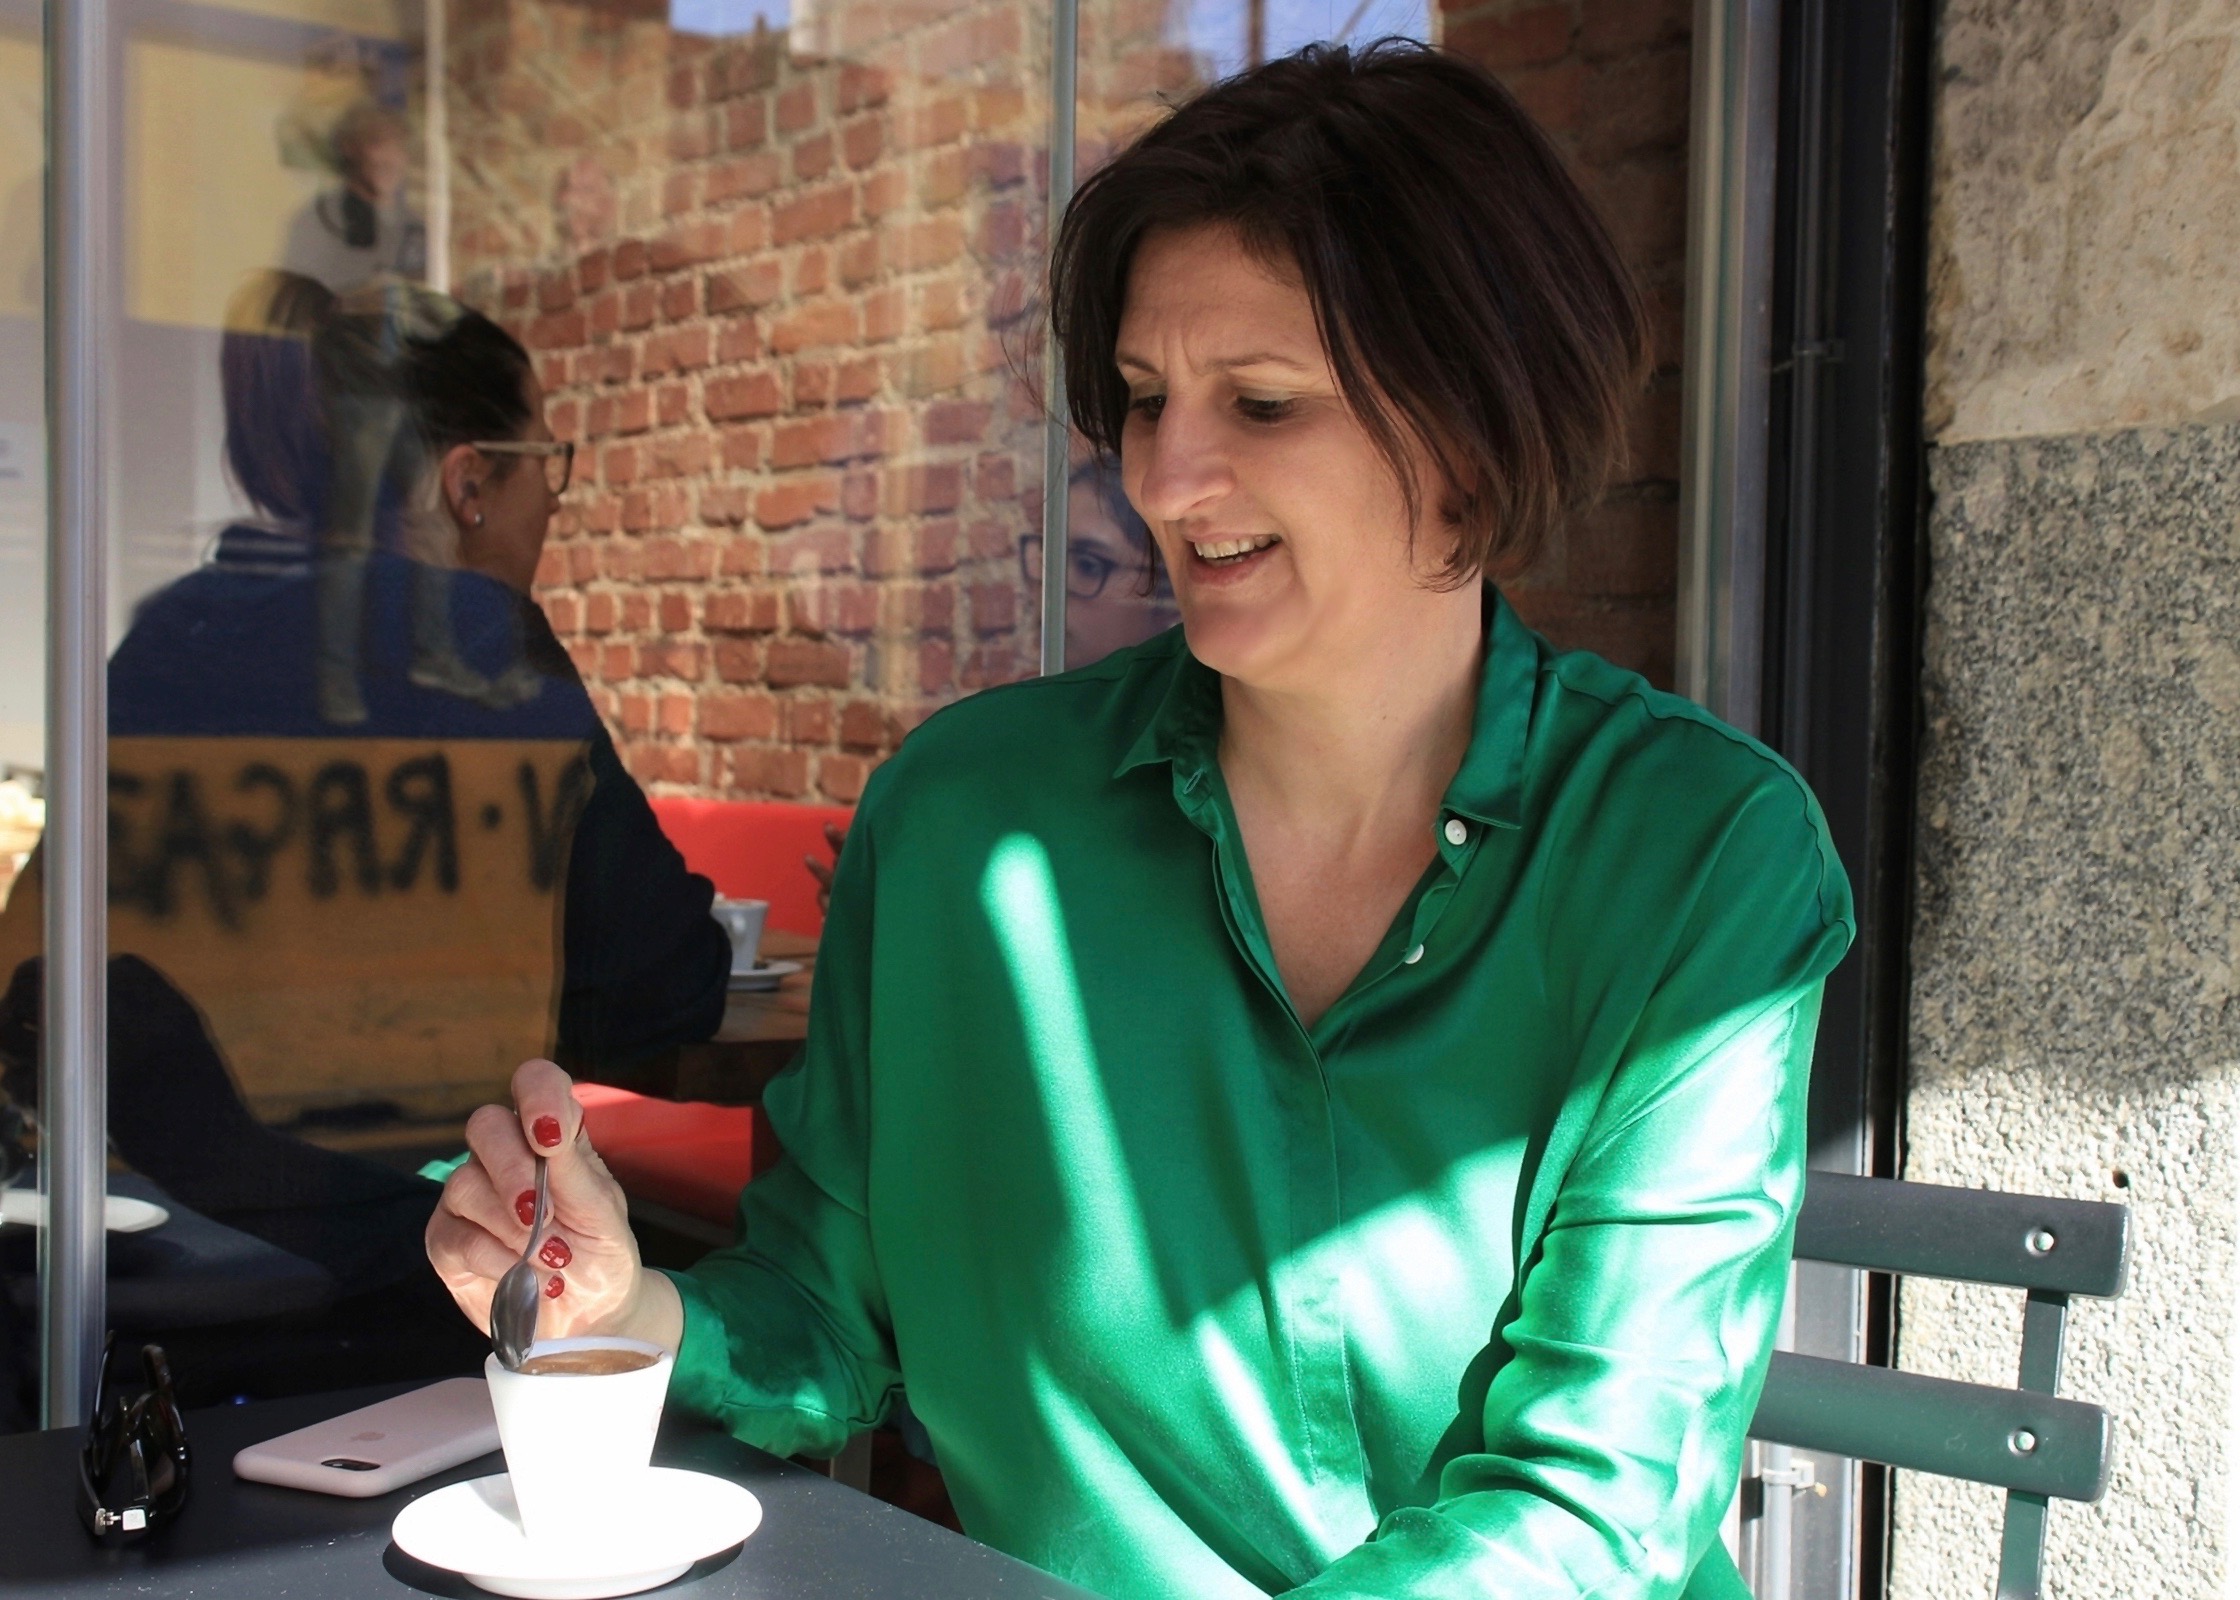 Wie sieht ein italienisches Frühstück aus? In der rechten Bildhälfte sitzt eine Frau in grüner Bluse. Vor ihr auf dem Tisch eine Espressotasse. Die Frau hält in der rechten Hand einen Kaffeelöffel und taucht ihn in den Espresso. Neben der Tasse liegt ein Smartphone.